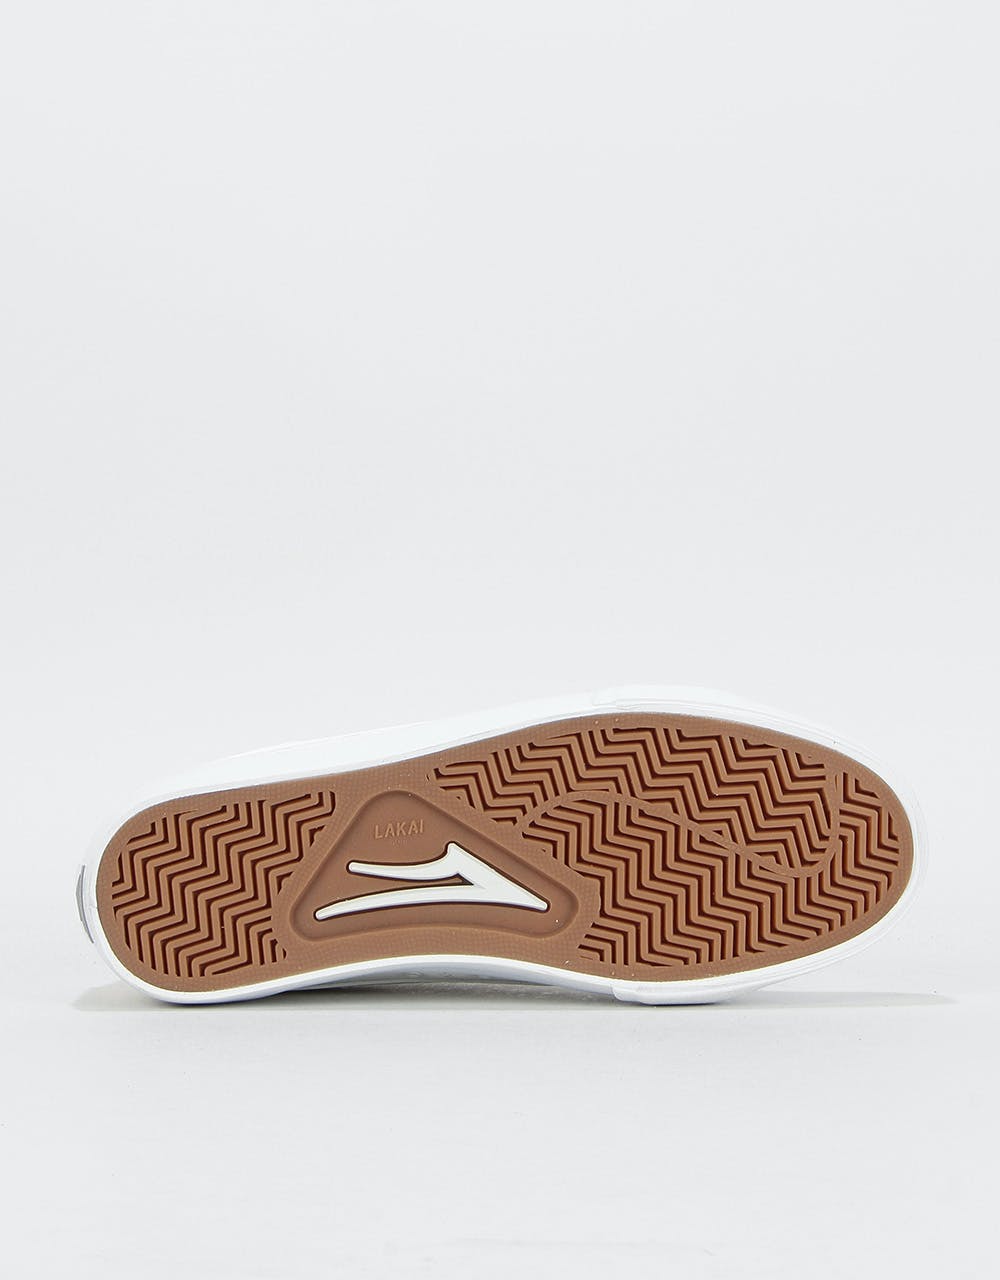 Lakai Ellis Skate Shoes - White Leather